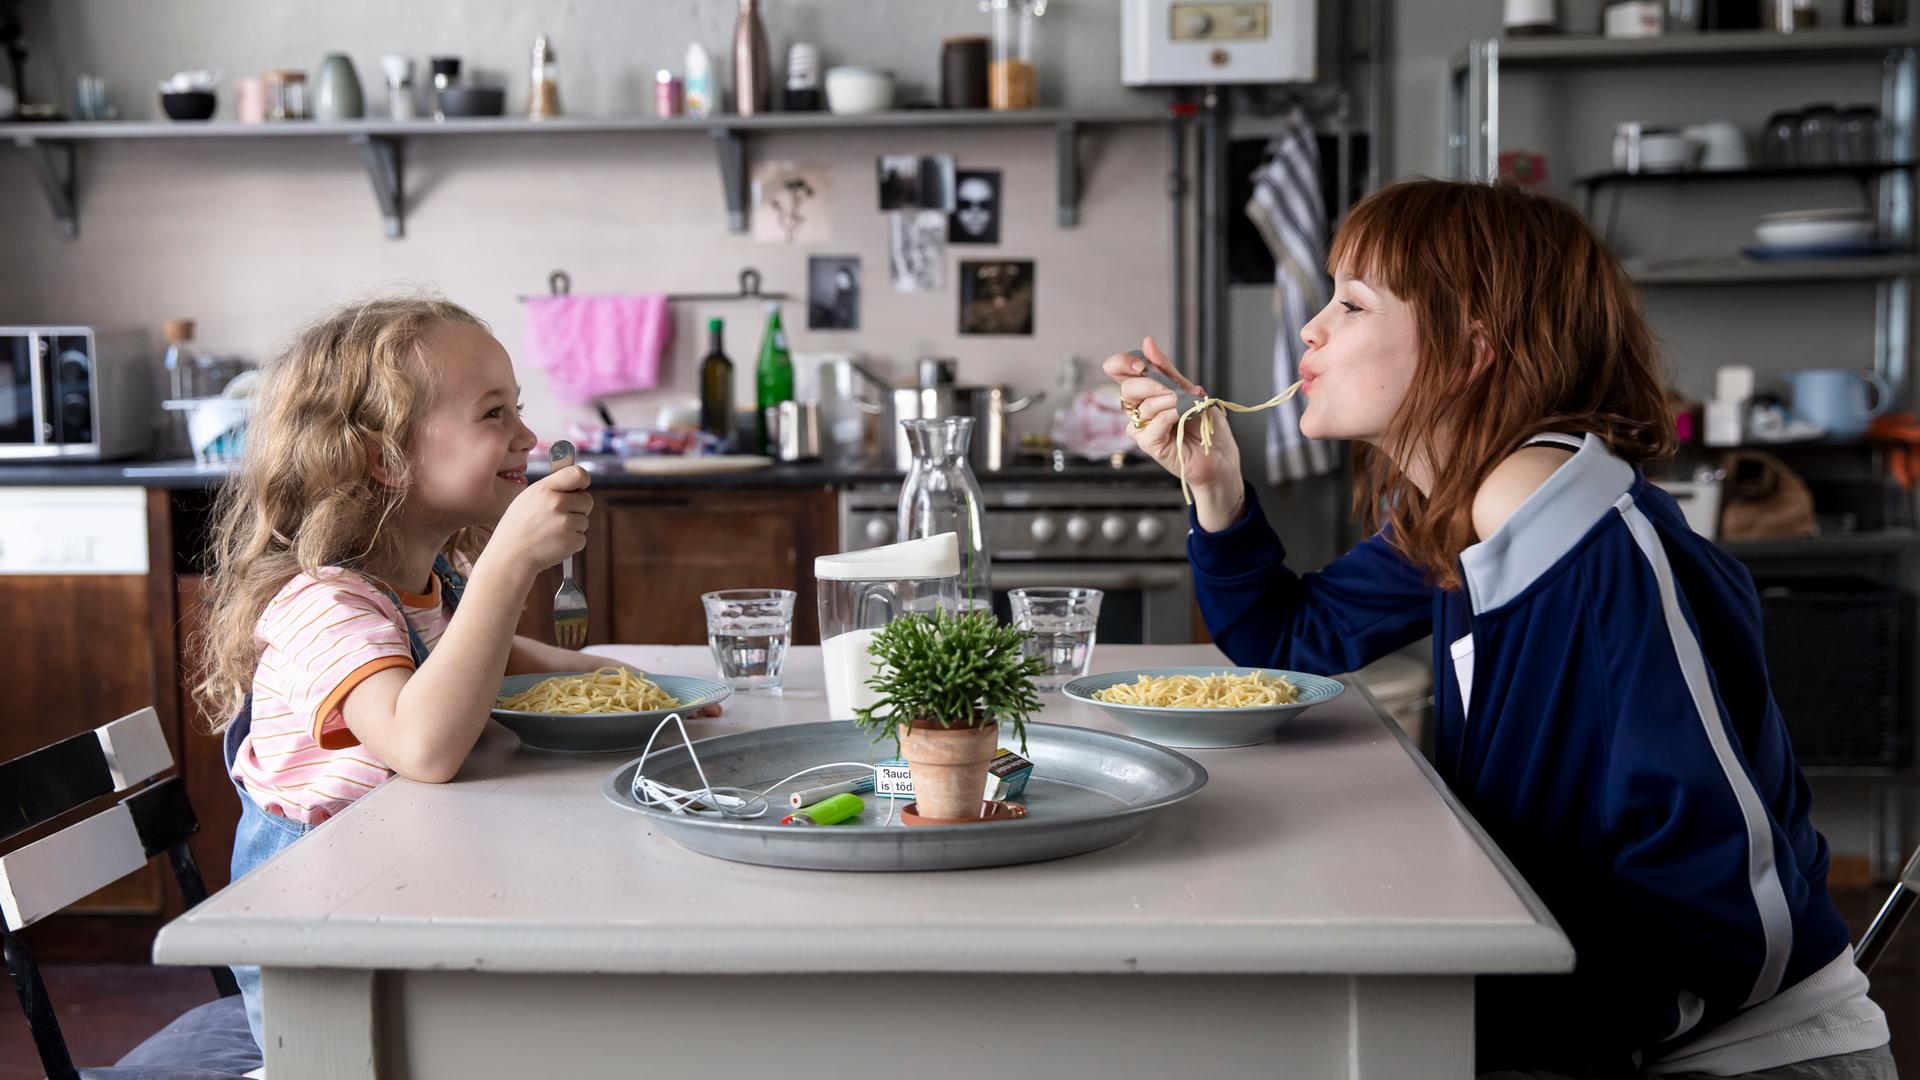 Szene aus dem Film "Wunderschön". Rechts im Bild Karoline Herfurth als Mutter Sonja, links ihre Filmtochter. Beide essen Spaghetti. 